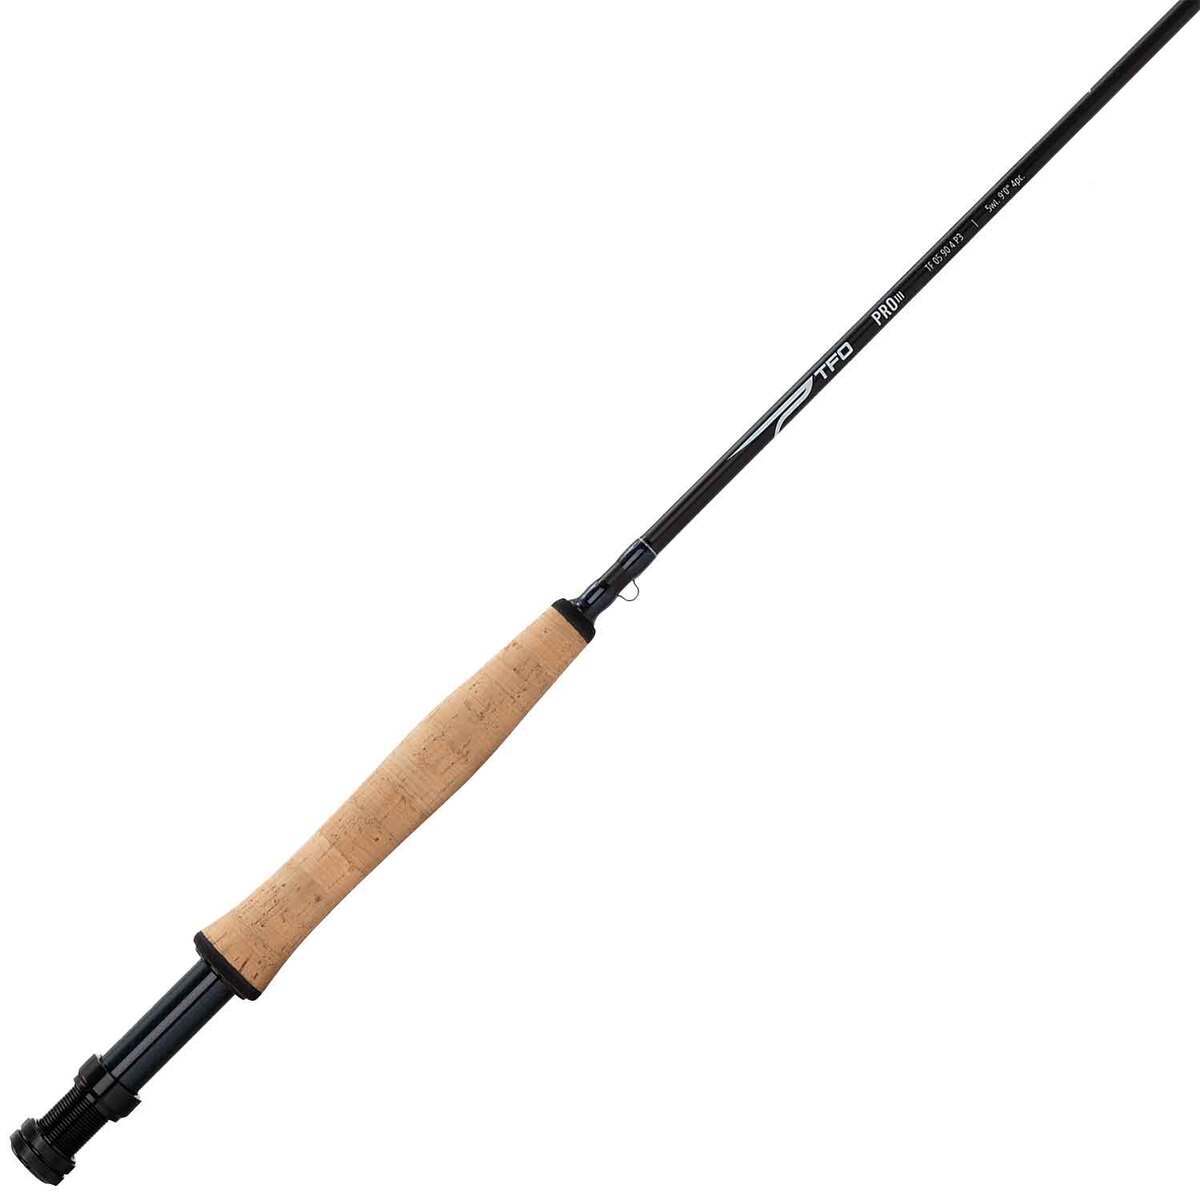 https://www.sportsmans.com/medias/temple-fork-outfitters-pro-iii-fly-fishing-rod-7ft-6in-3wt-4pc-1817582-1.jpg?context=bWFzdGVyfGltYWdlc3wyODUyNnxpbWFnZS9qcGVnfGFEUTFMMmd3TVM4eE1USTVPVFUyTVRFeE1UVTRNaTh4TWpBd0xXTnZiblpsY25OcGIyNUdiM0p0WVhSZlltRnpaUzFqYjI1MlpYSnphVzl1Um05eWJXRjBYM050ZHkweE9ERTNOVGd5TFRFdWFuQm58YWU0YzdjM2ZhMDUxZTM0MjBmYWVkNDAyZTRlM2NiNTNkMzYwNDc5NTlkMDU2ODkyNGU0MzM4ZmM2ZWFmMWFhMw